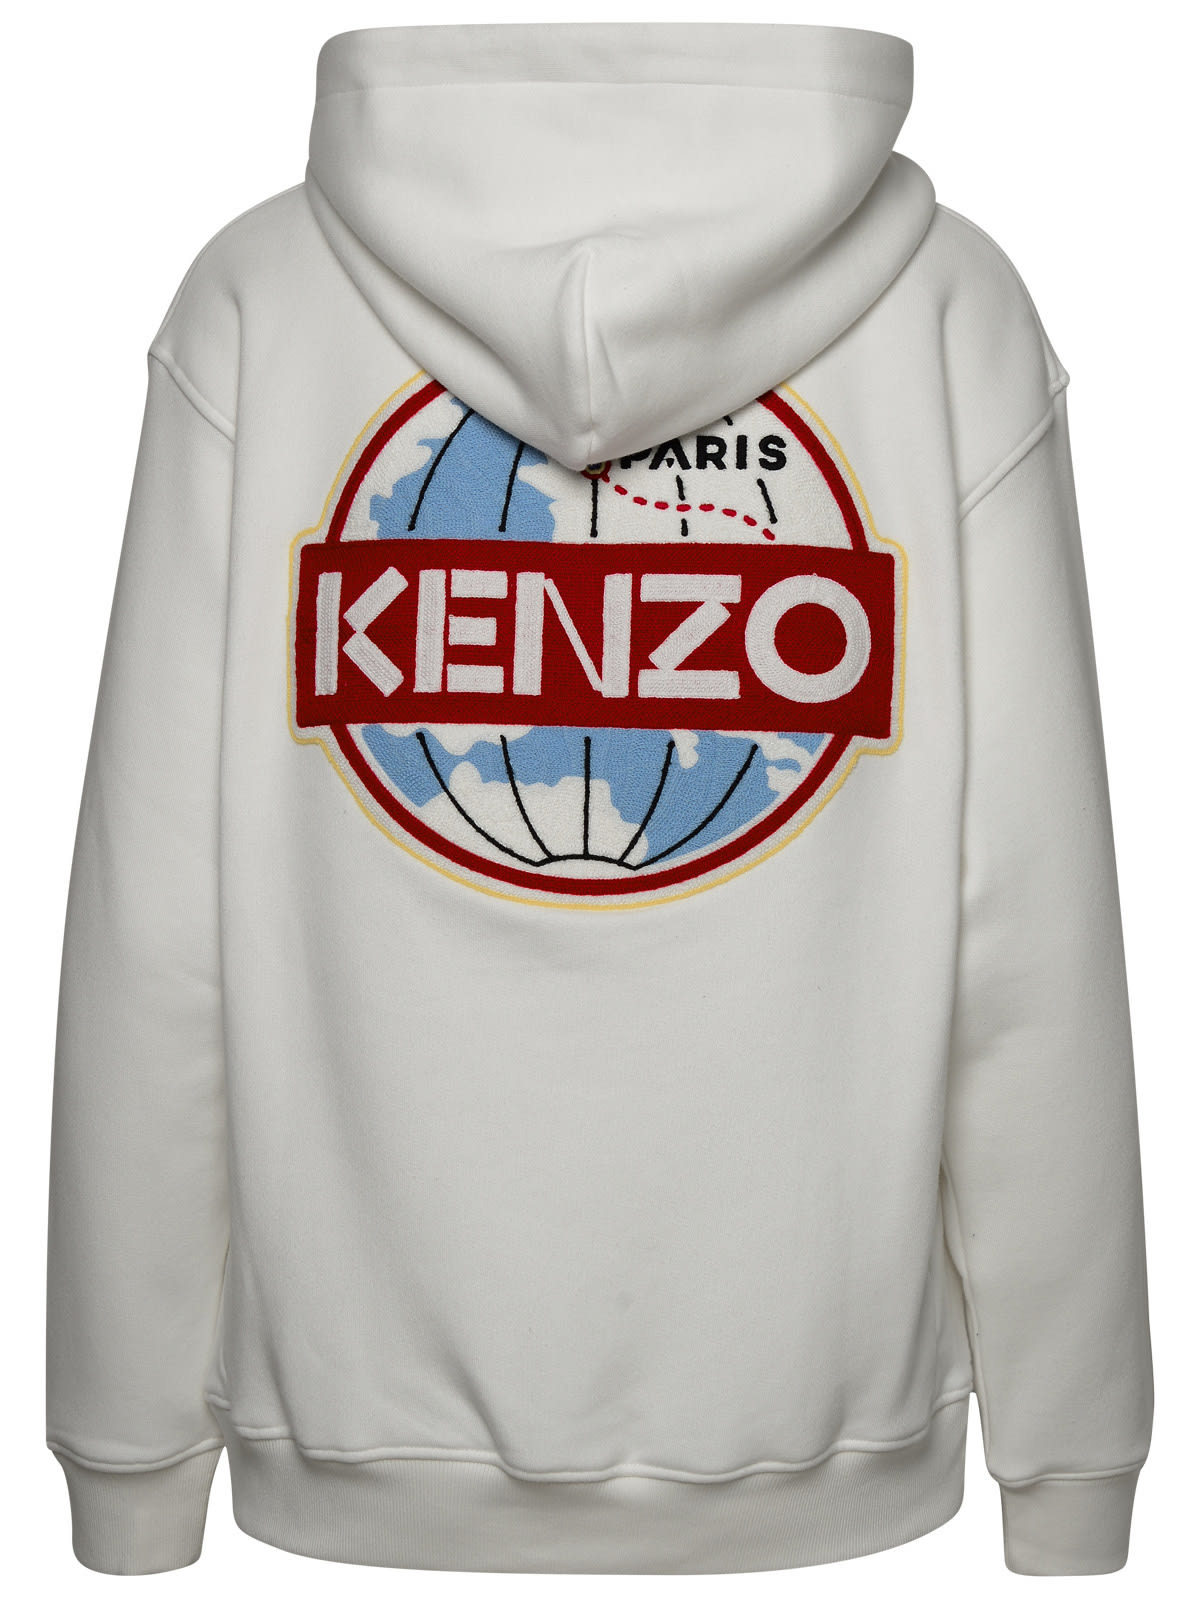 Shop Kenzo White Cotton Sweatshirt